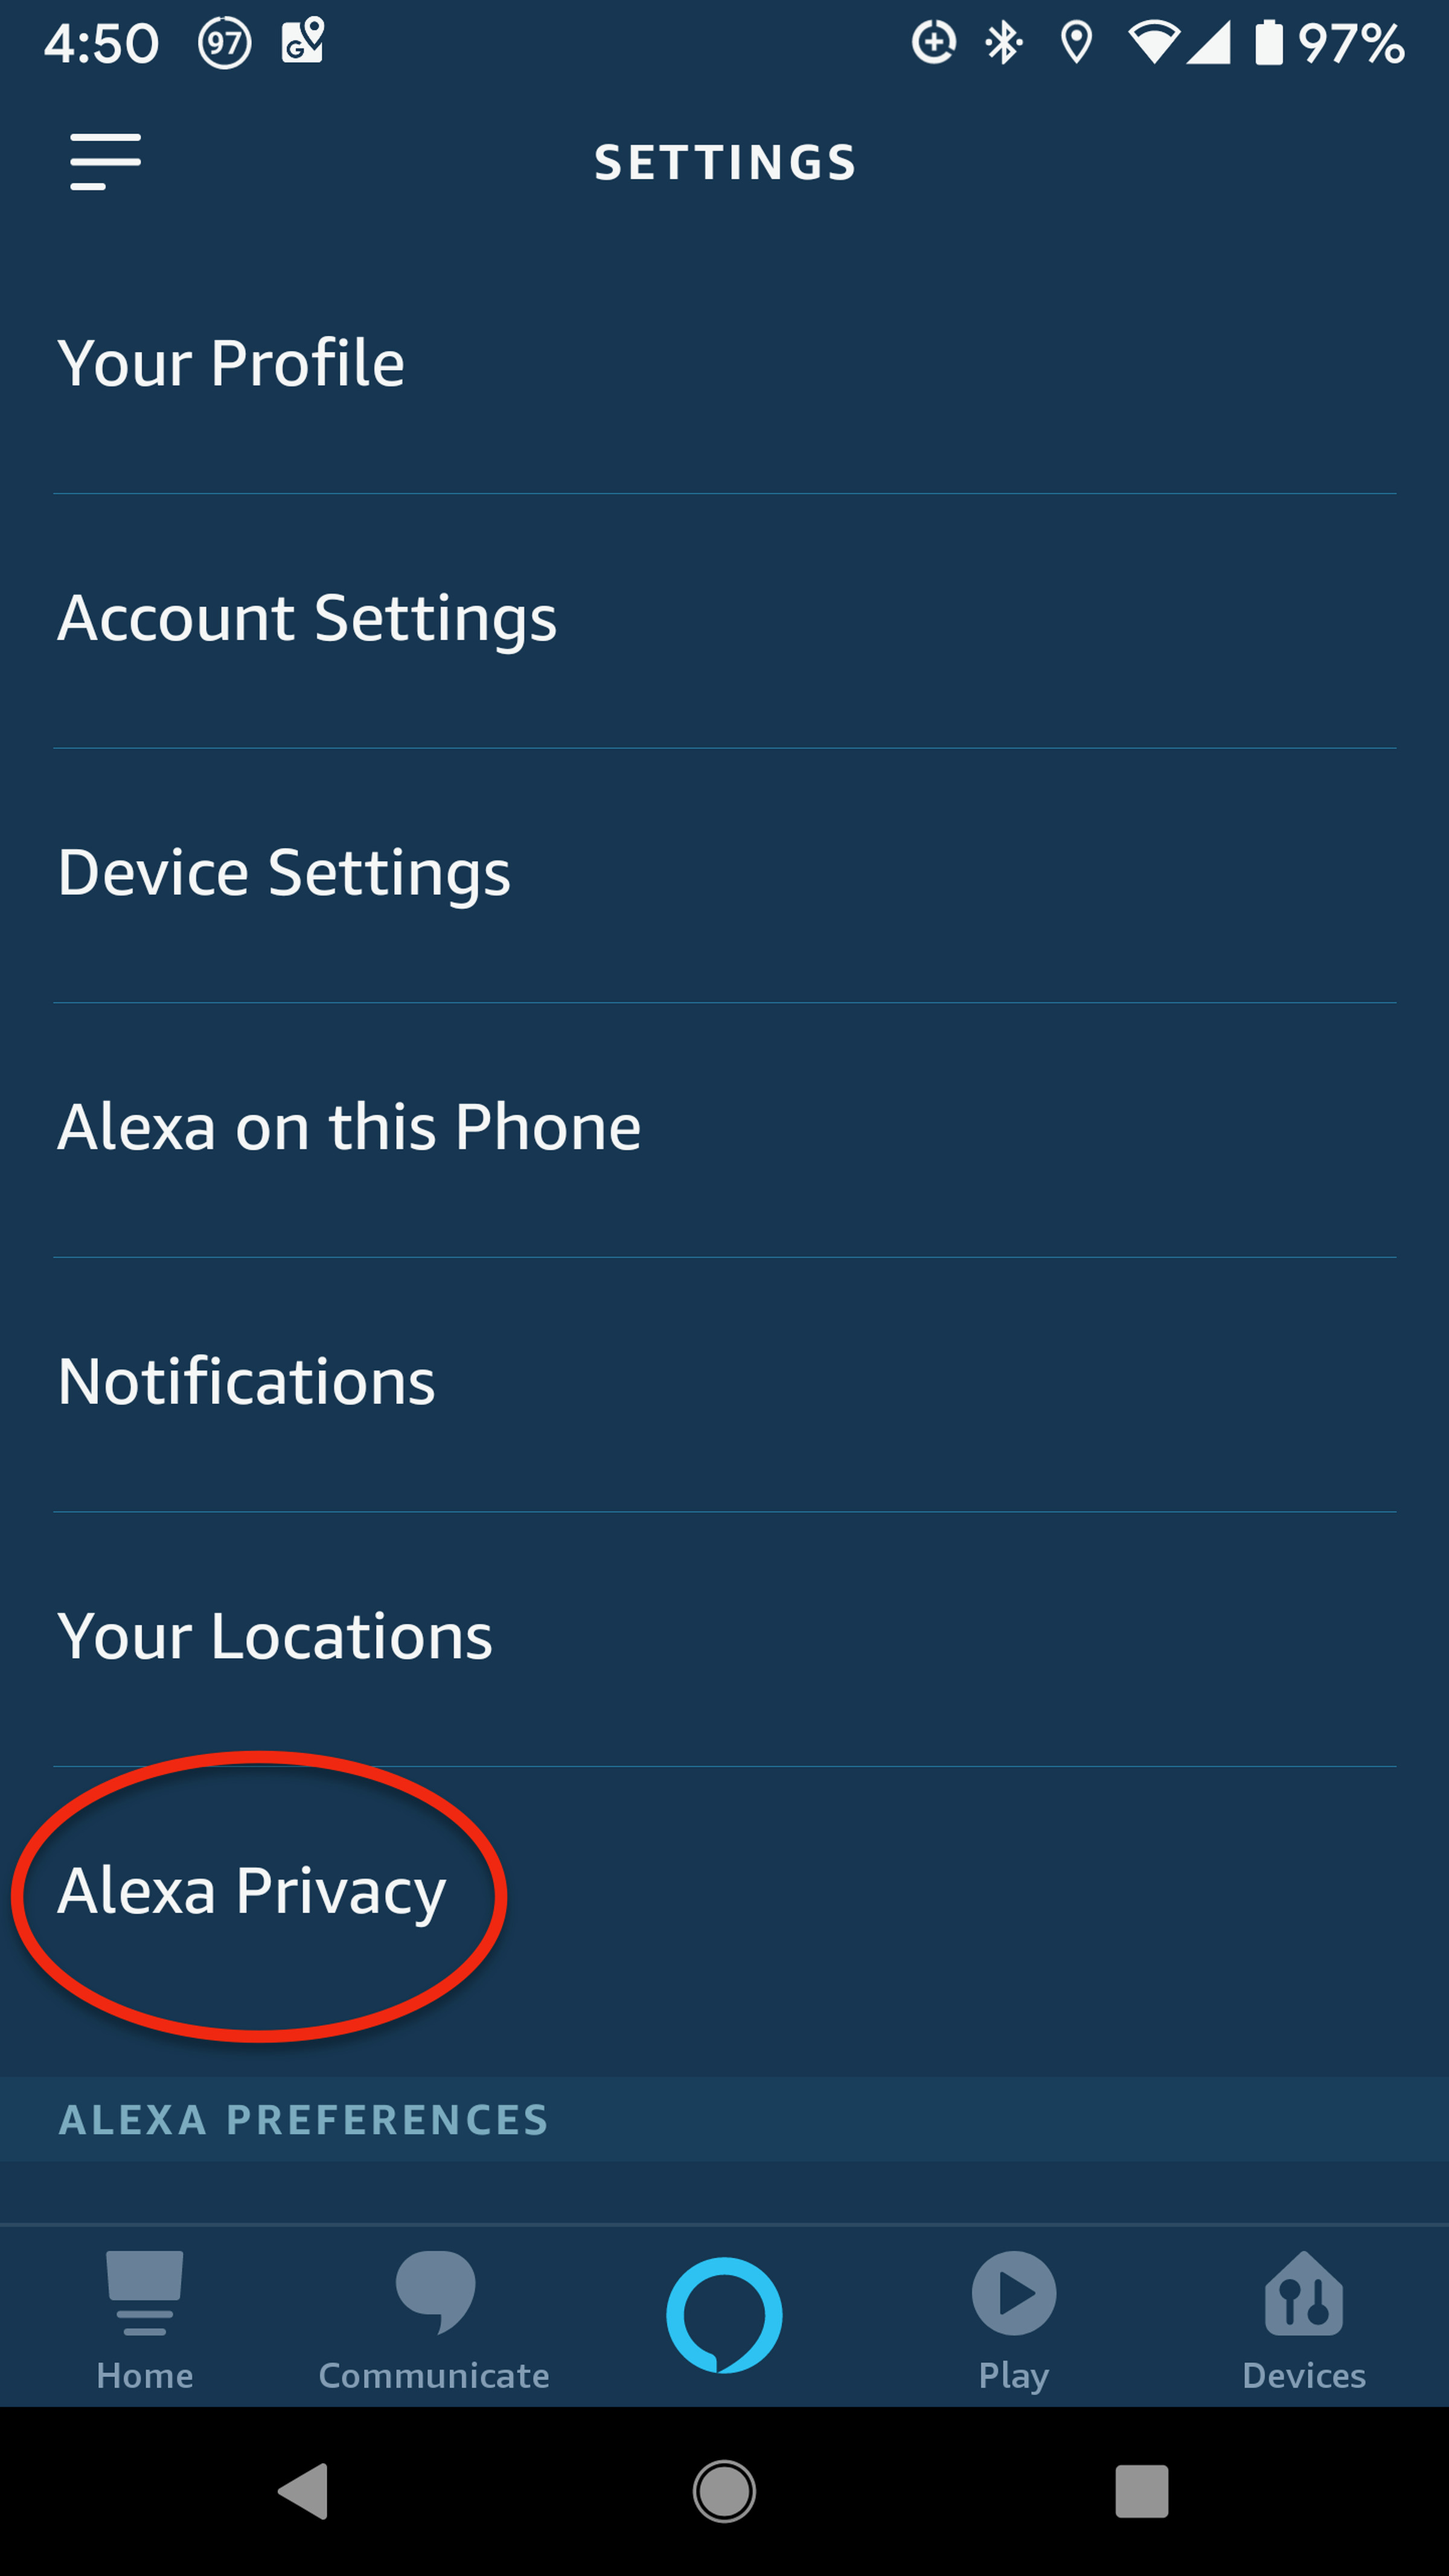 Deleting Alexa voice